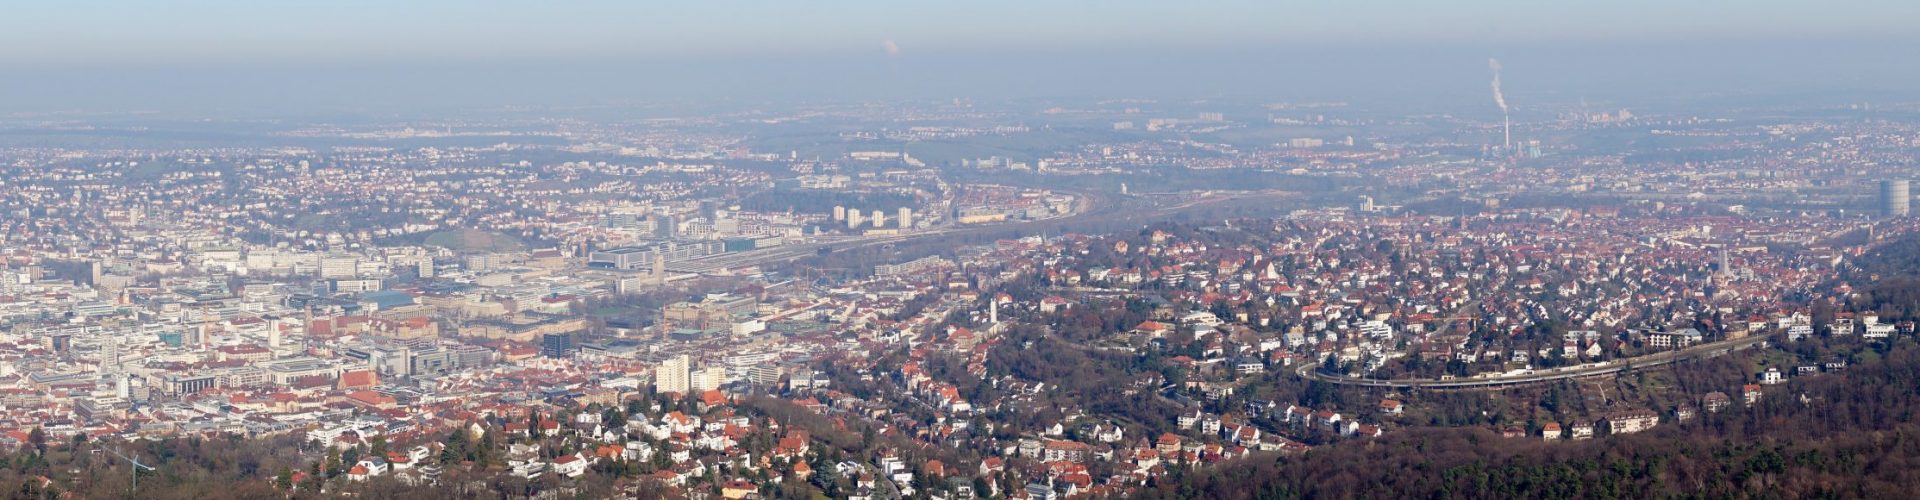 Immobilienmakler-Ludwigsburg - Panoramablick auf Stuttgart und Umgebung